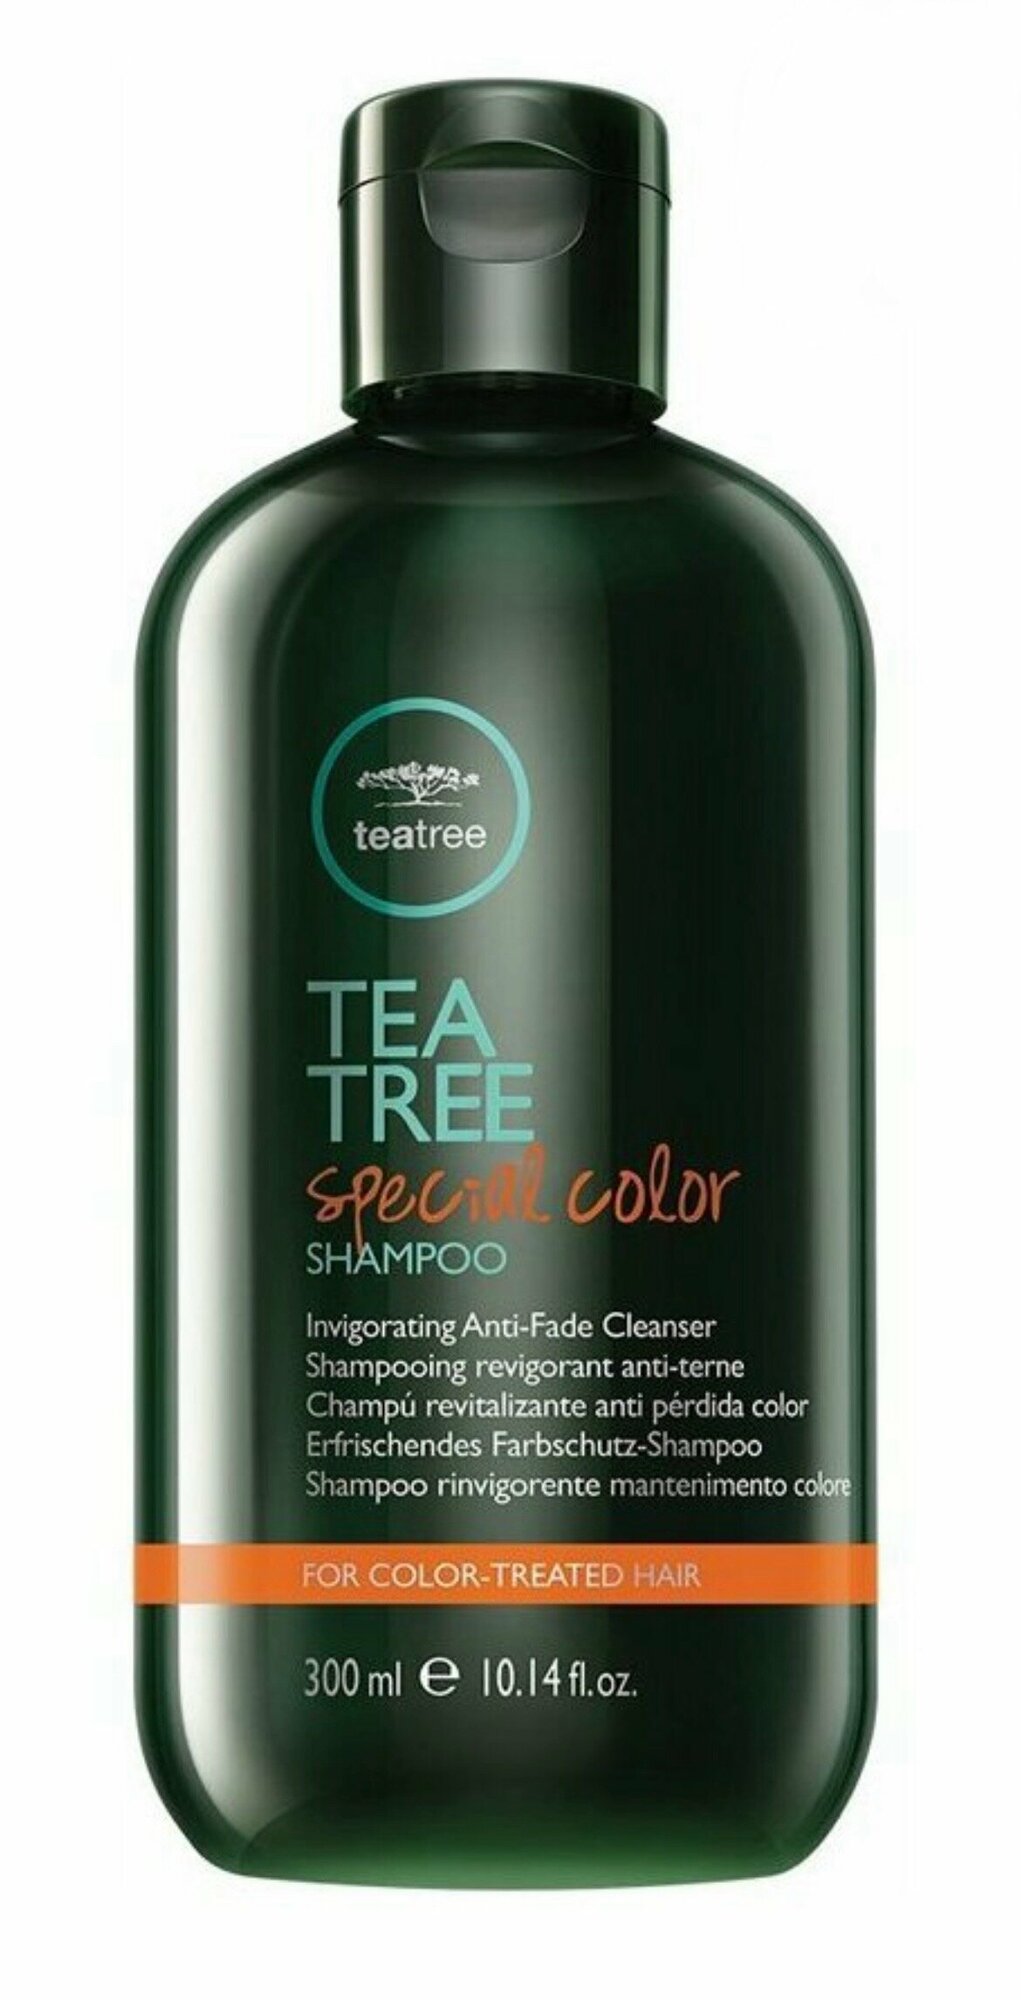 Paul Mitchell Tea Tree Special Color Shampoo - Шампунь для окрашенных волос с маслом чайного дерева 300 мл